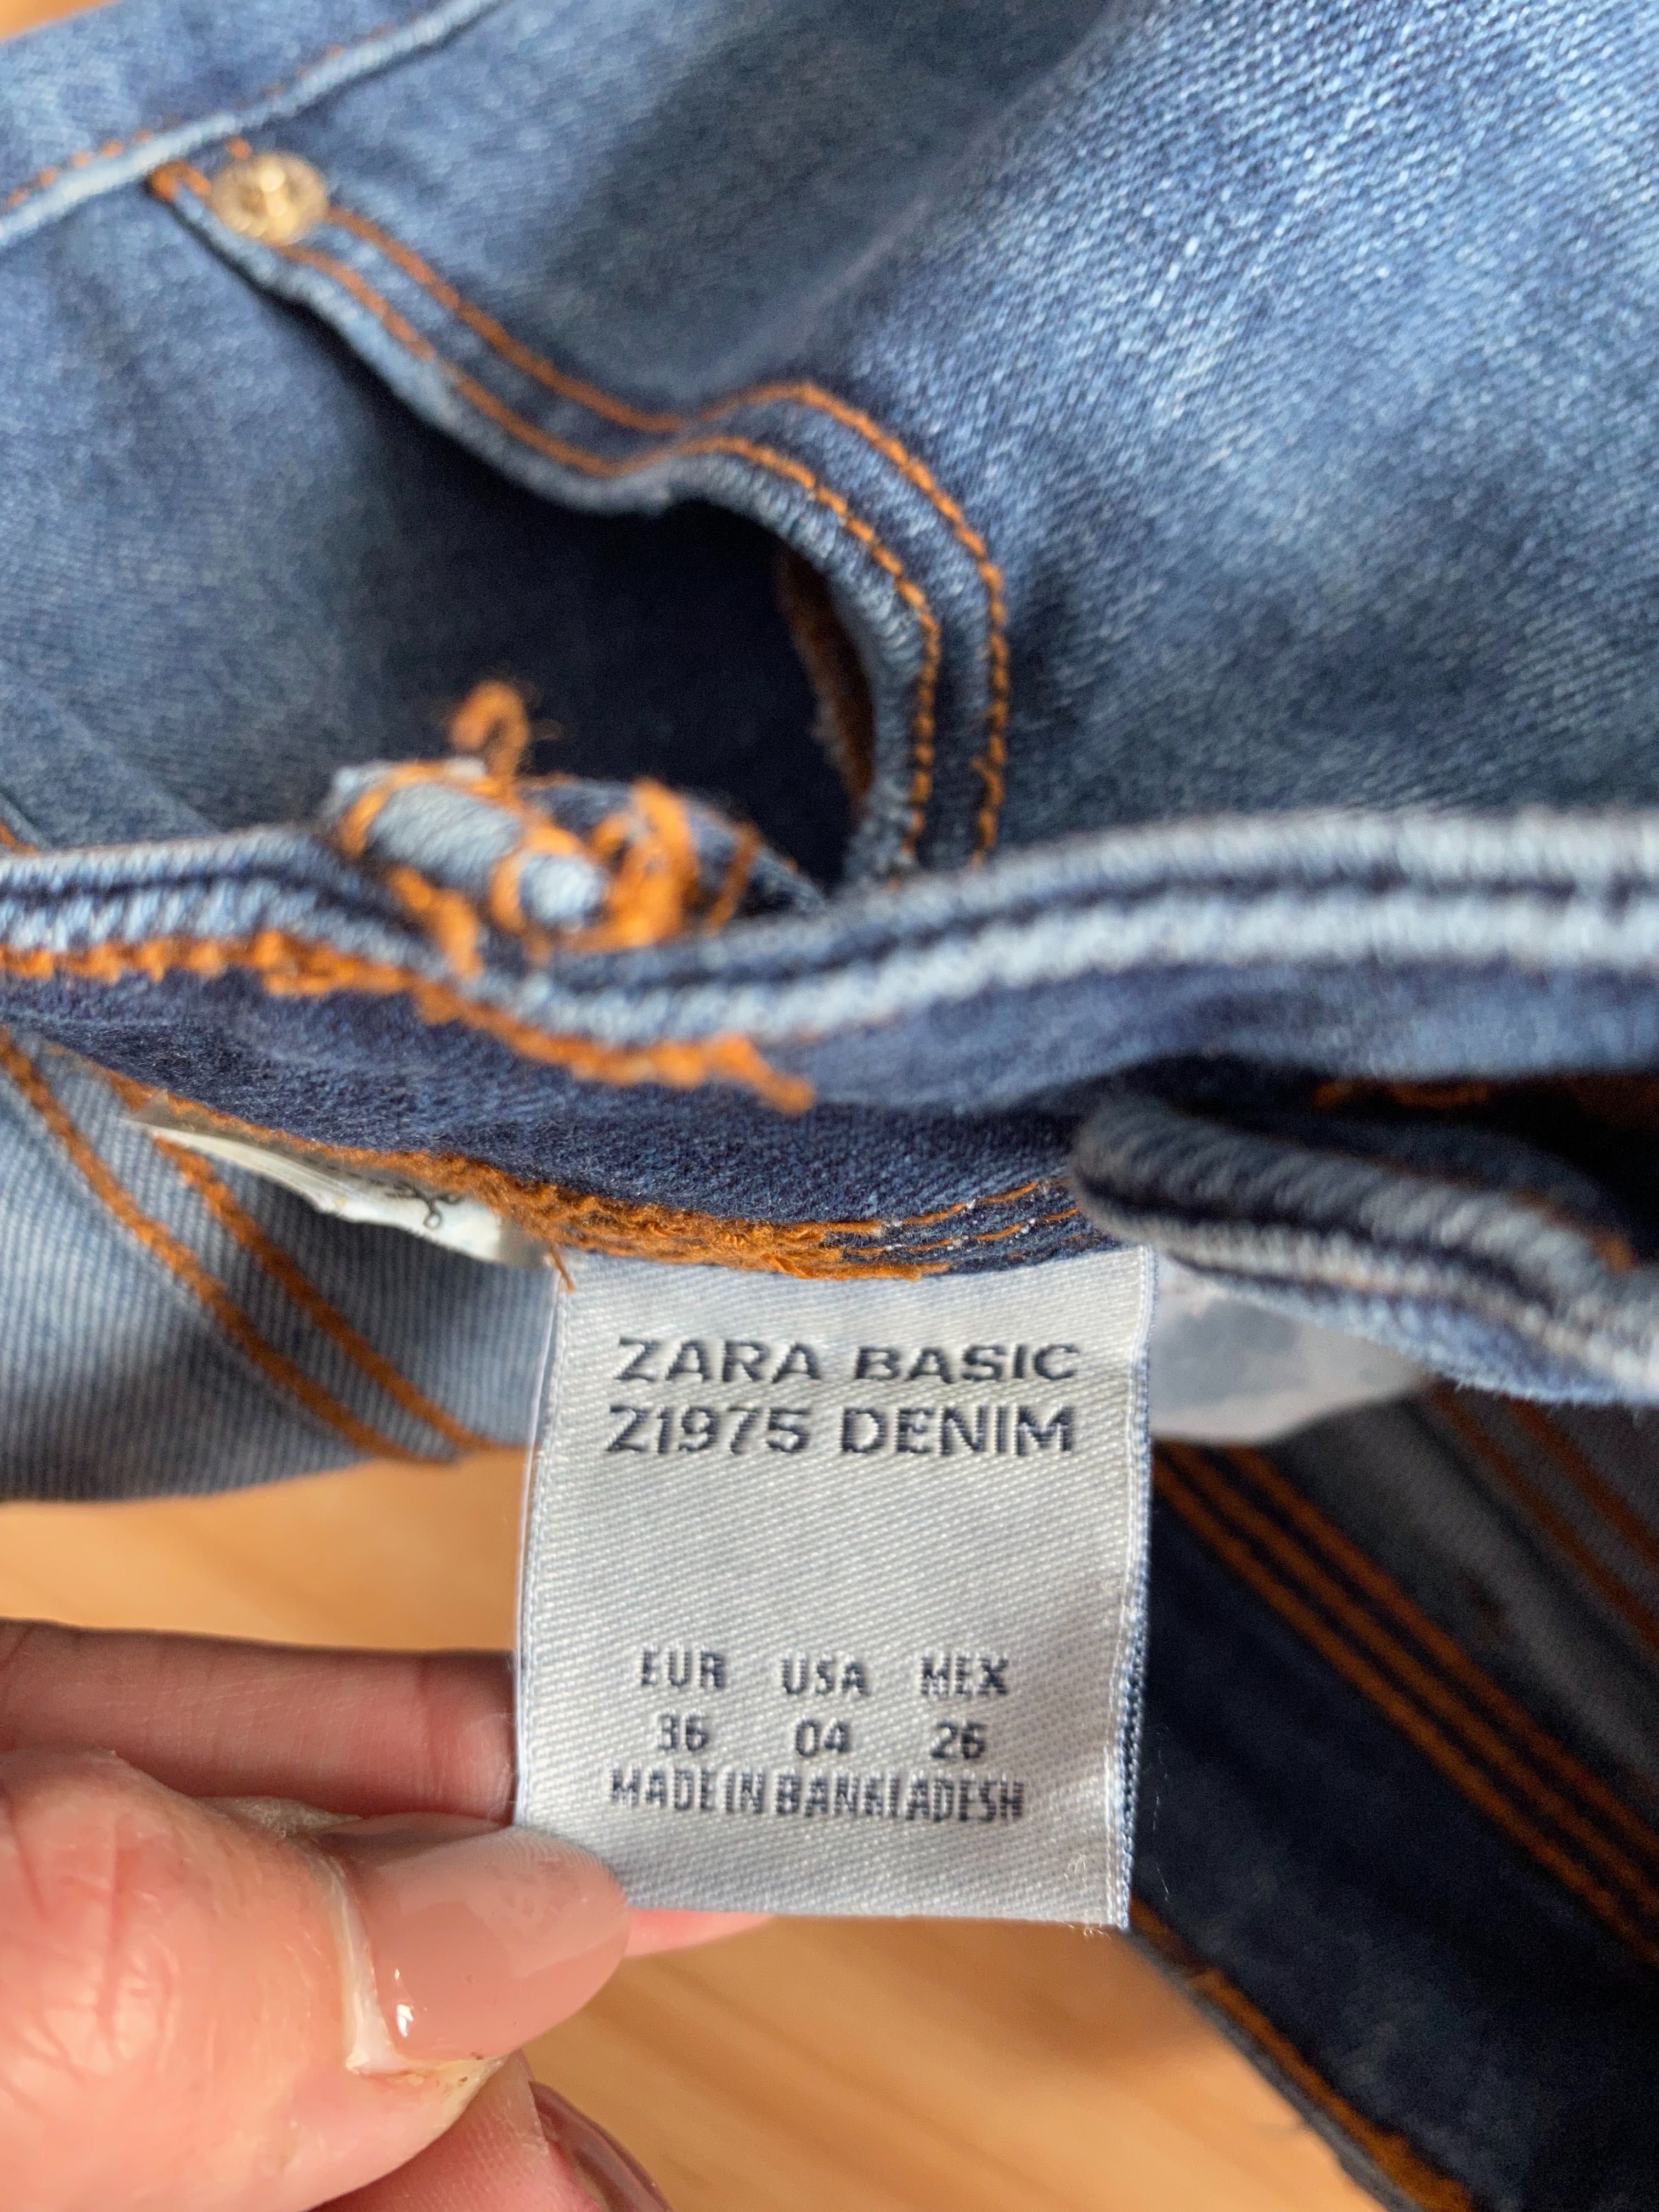 Дамски дънки Zara Z1975 Basic Denim